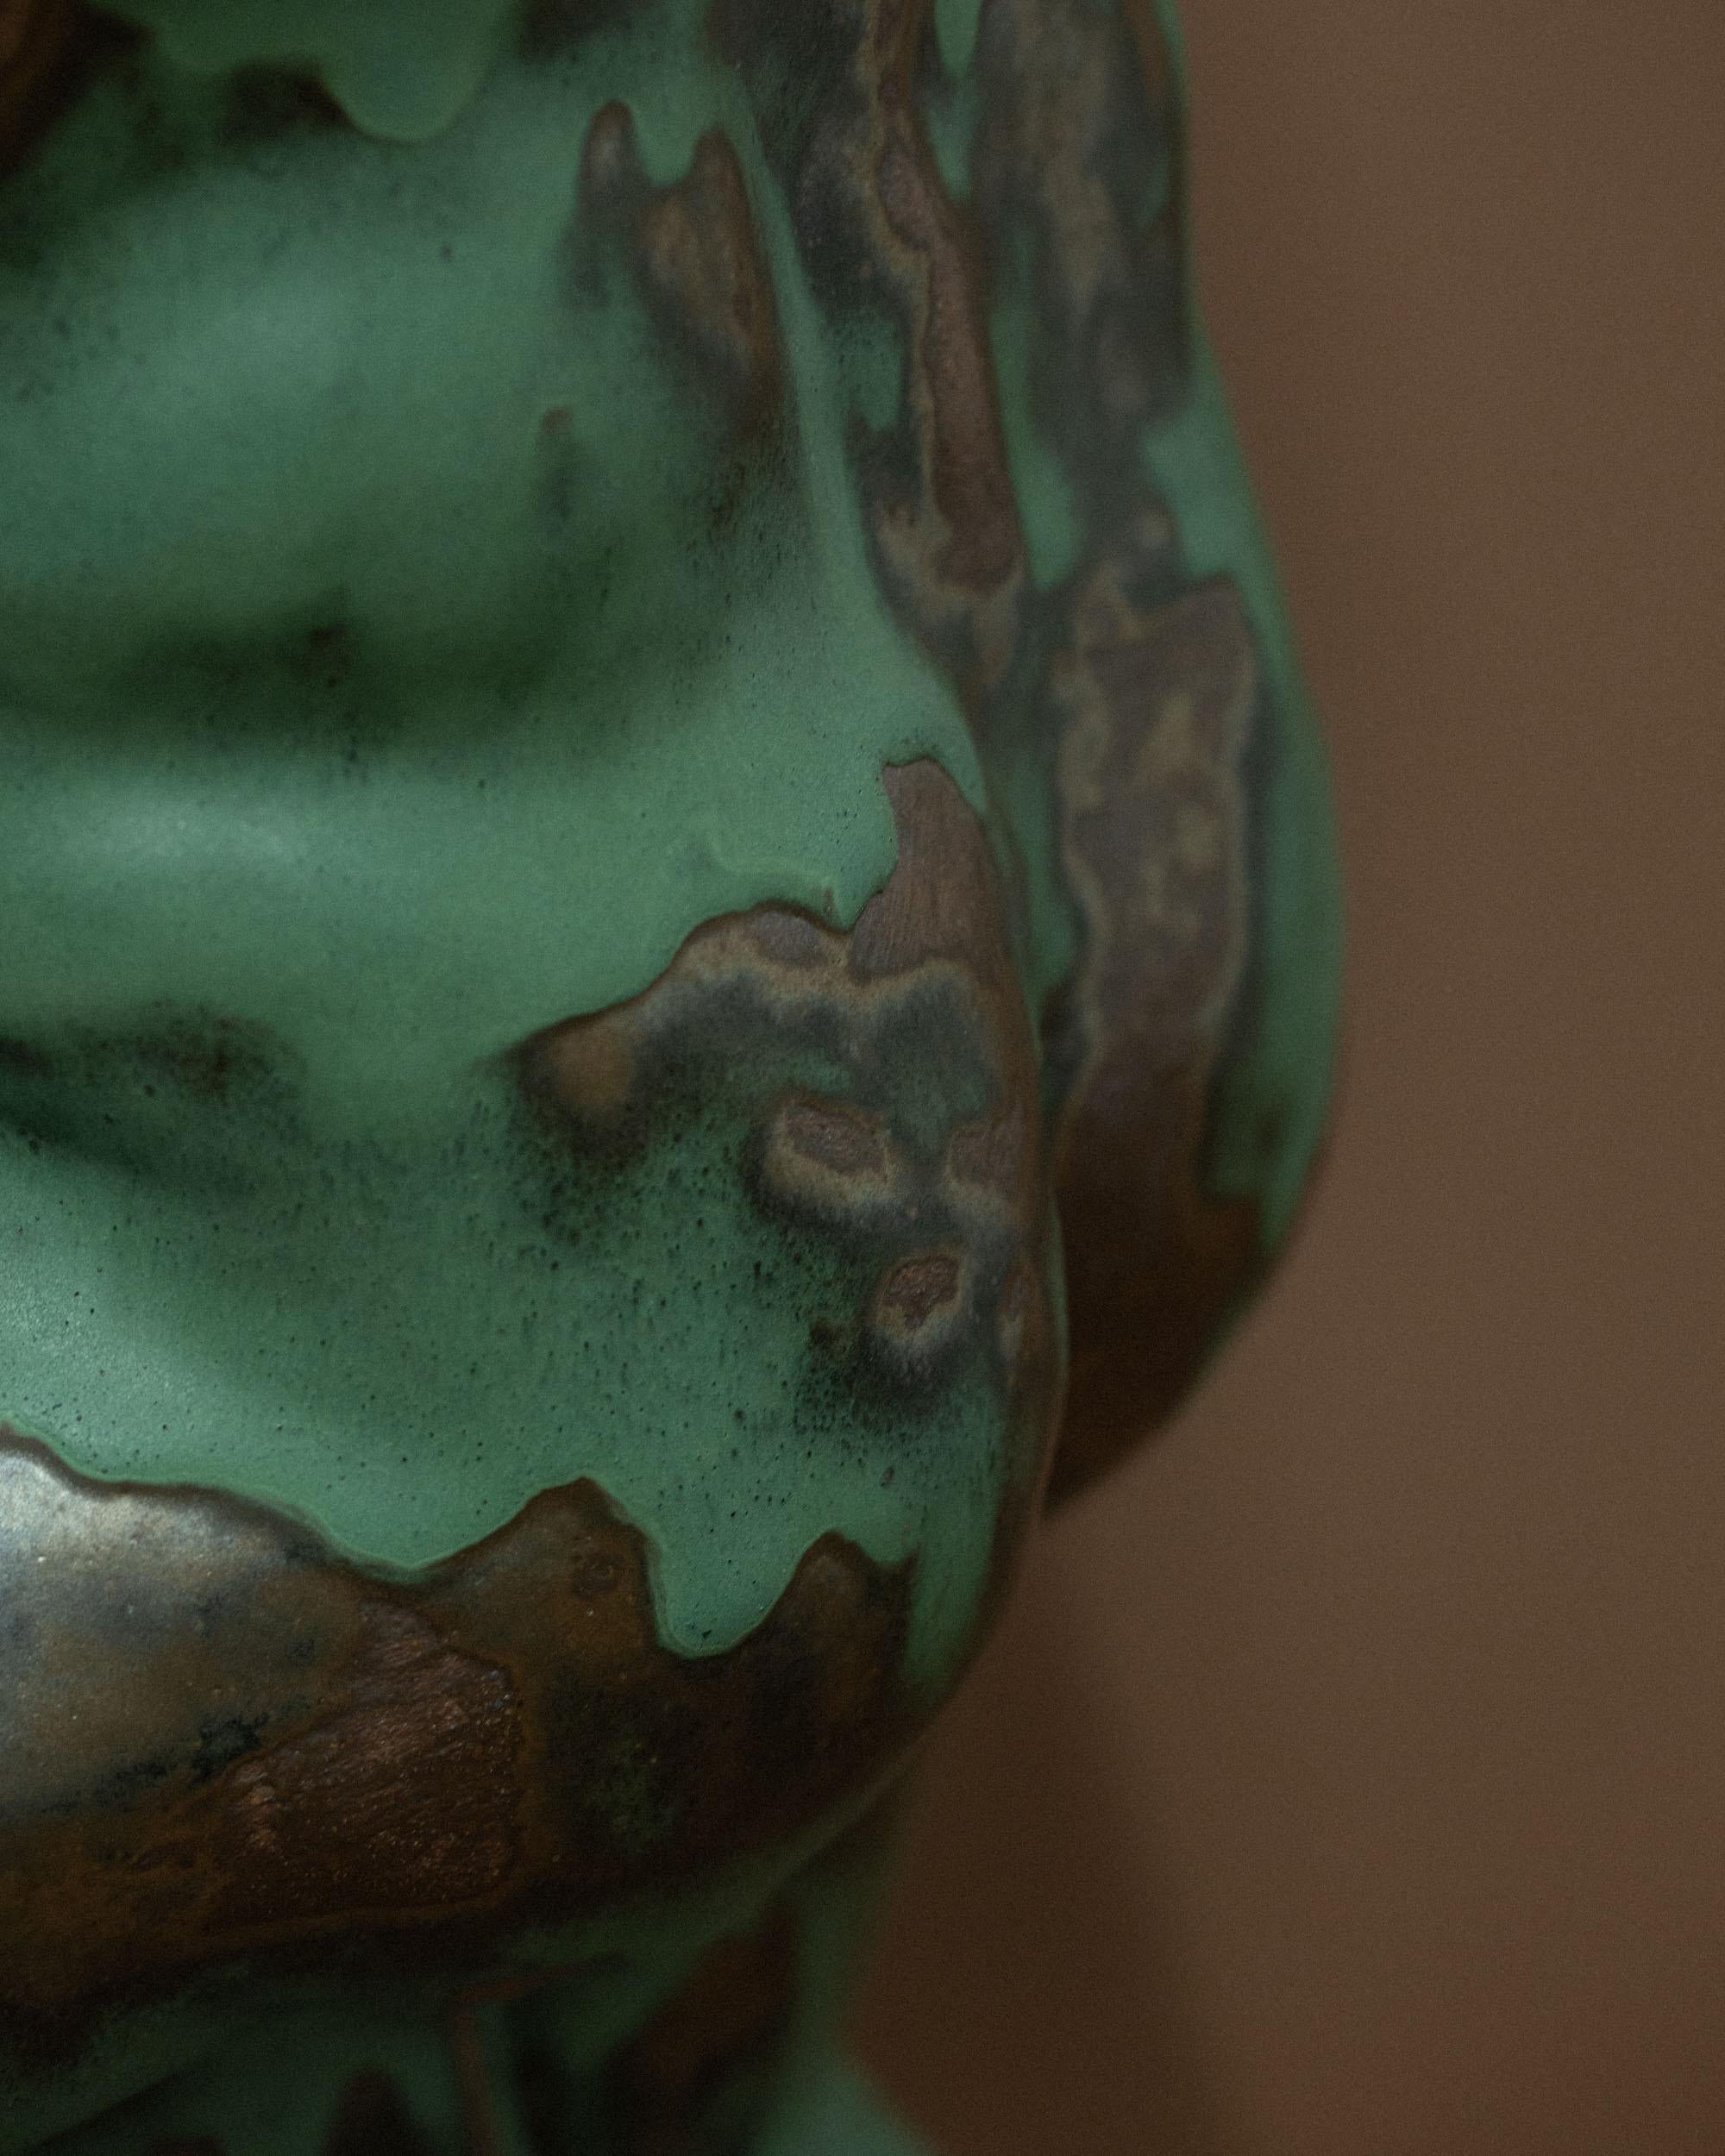 Ceramic Green Male Torso Sculpture by Common Body For Sale